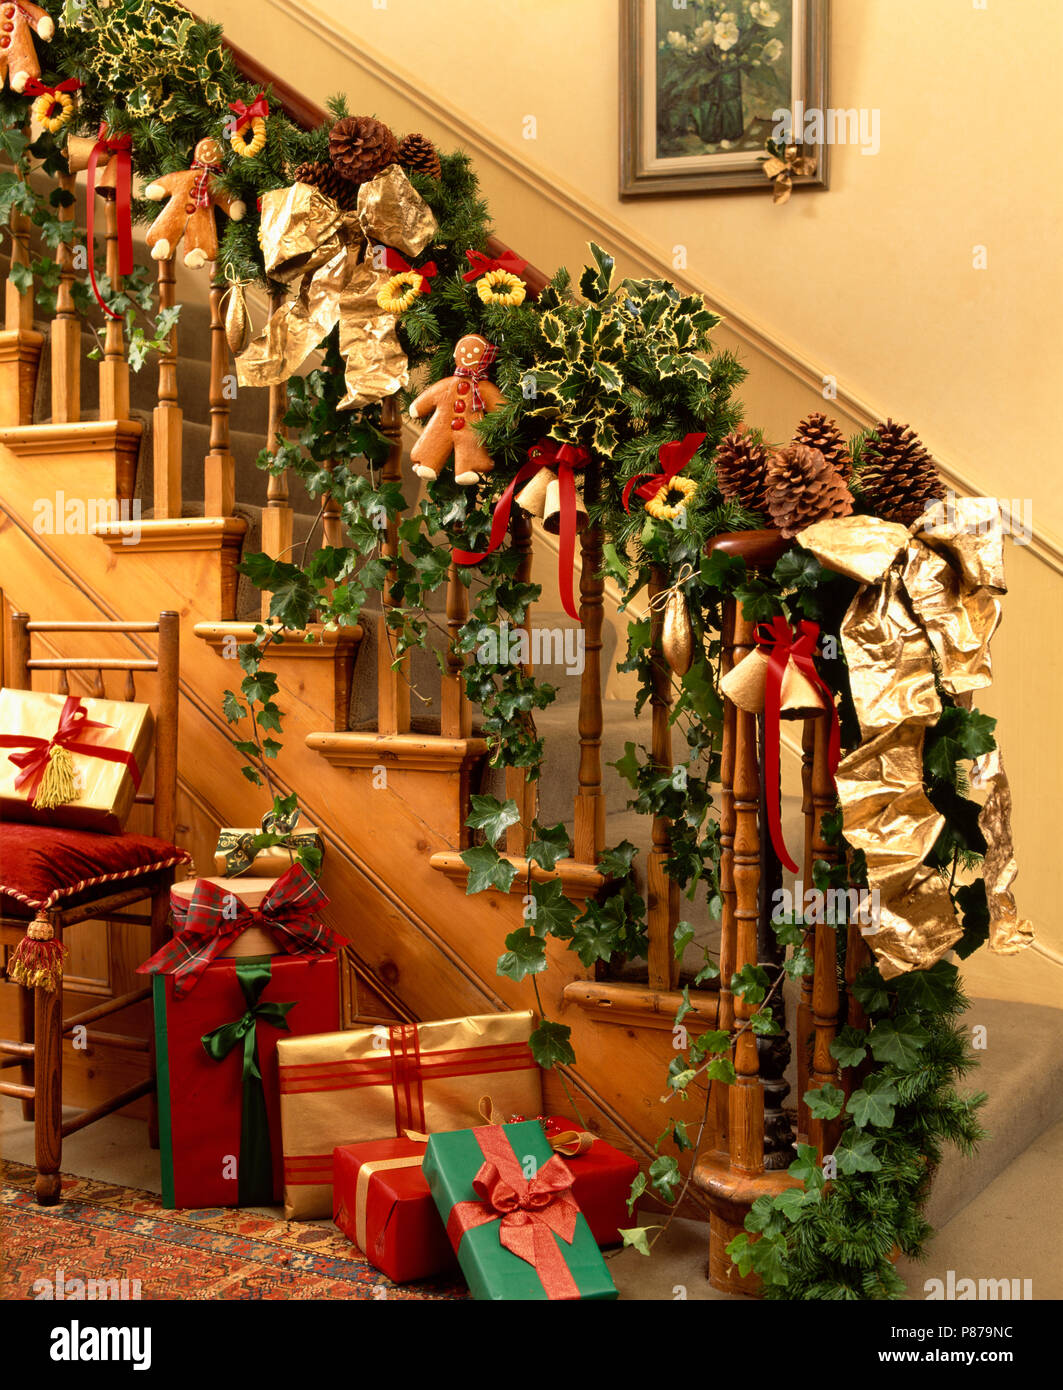 Frisches Laub Girlande mit Lebkuchen Männer am Geländer der Treppe oben  Geschenk verpackt Weihnachtsgeschenke in Halle Stockfotografie - Alamy